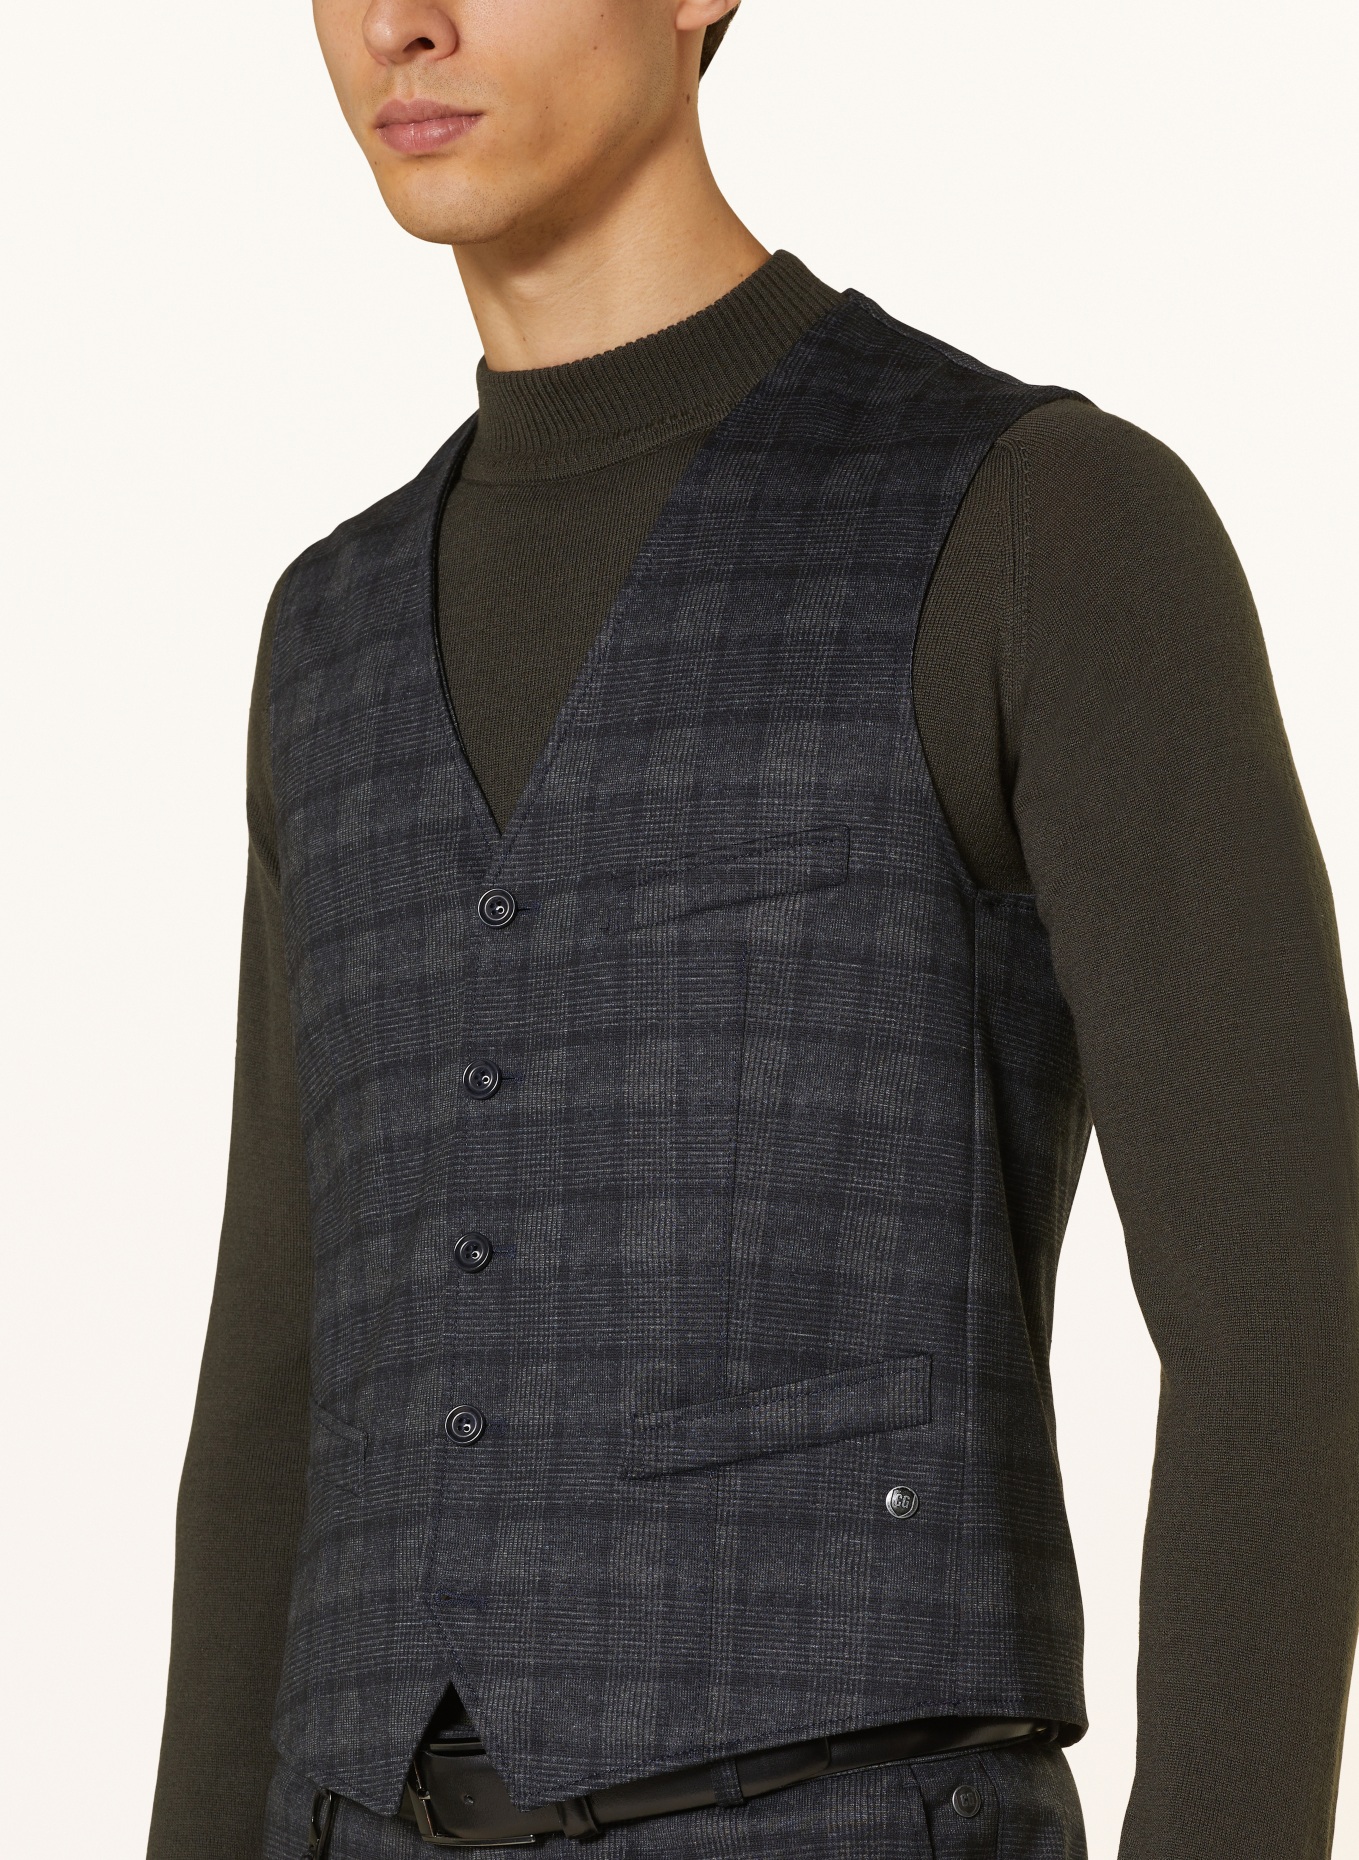 CG - CLUB of GENTS Suit vest MOSLEY slim fit, Color: 63 BLAU DUNKEL (Image 5)